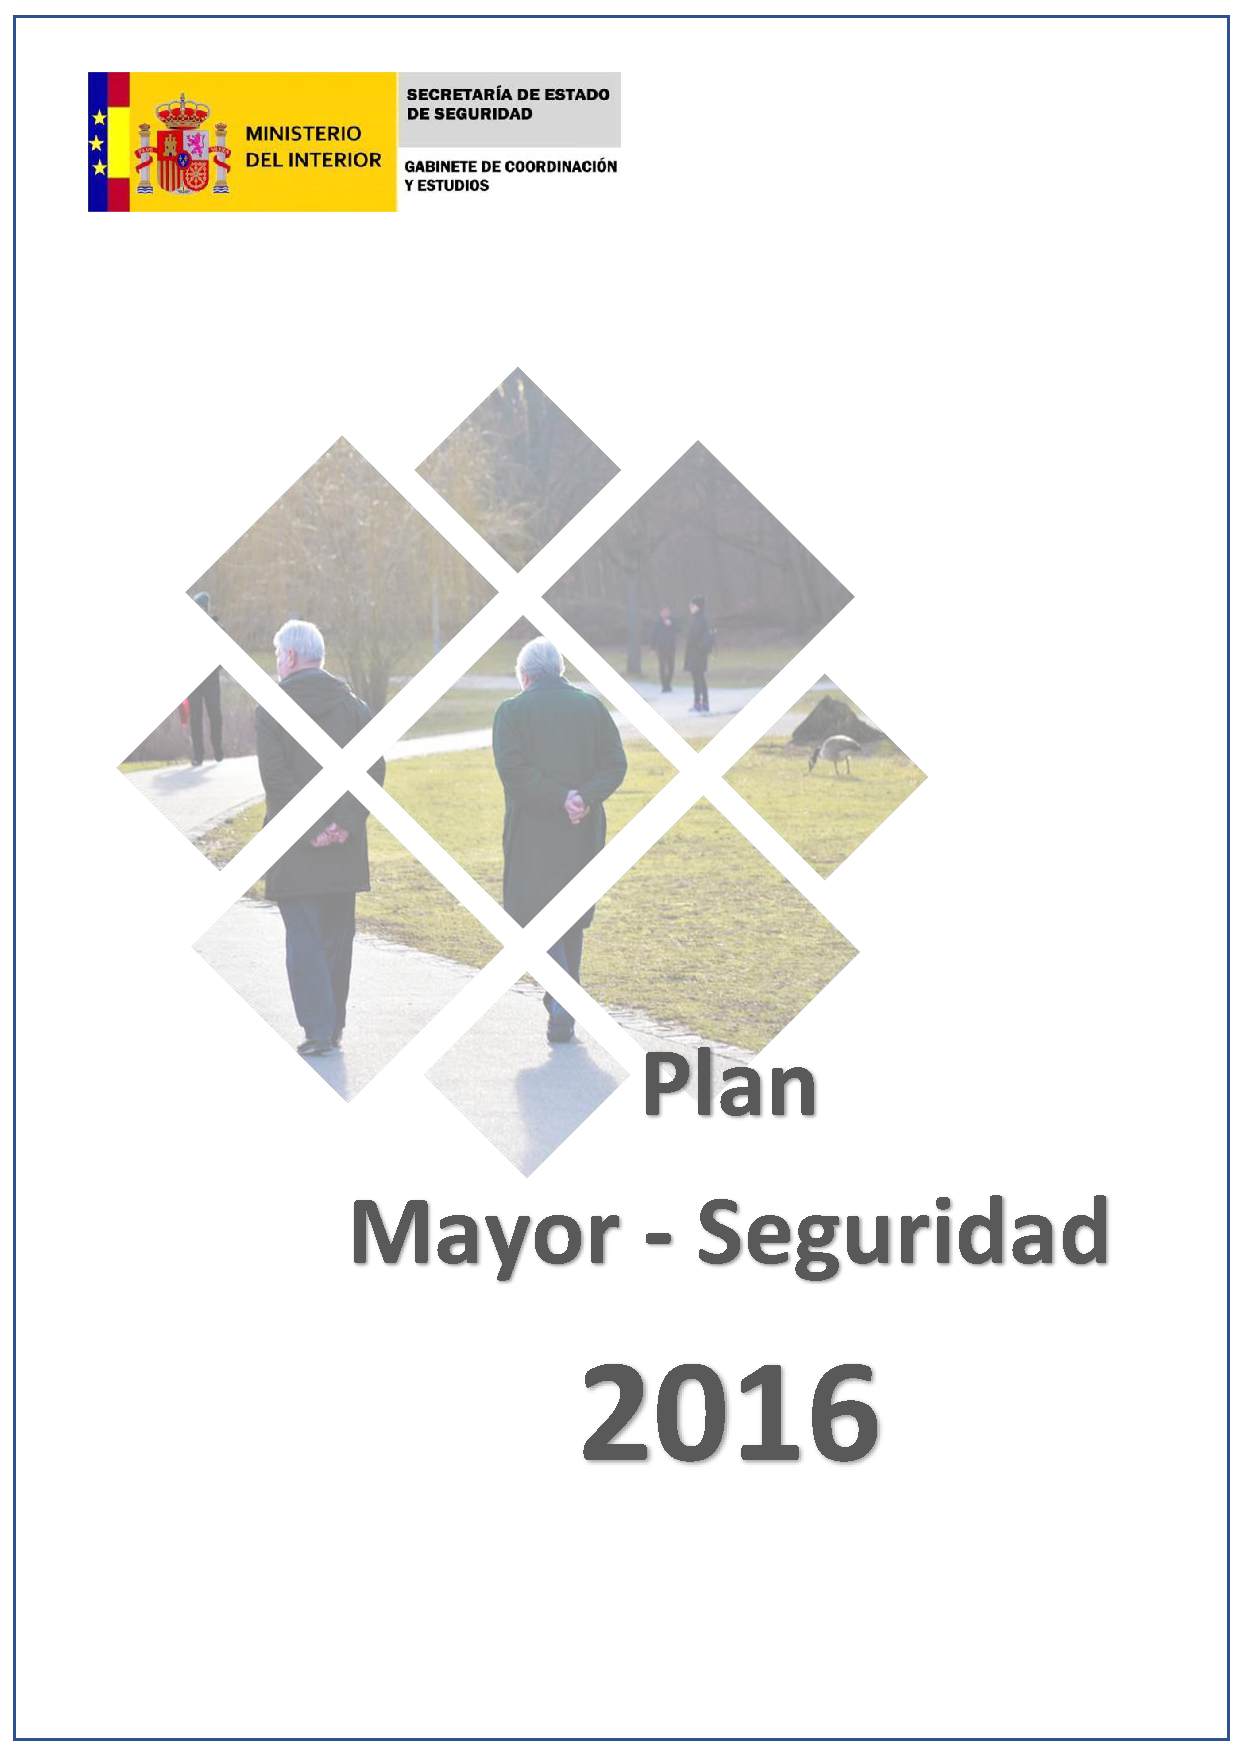 Balance 2016 - Major Security Plan